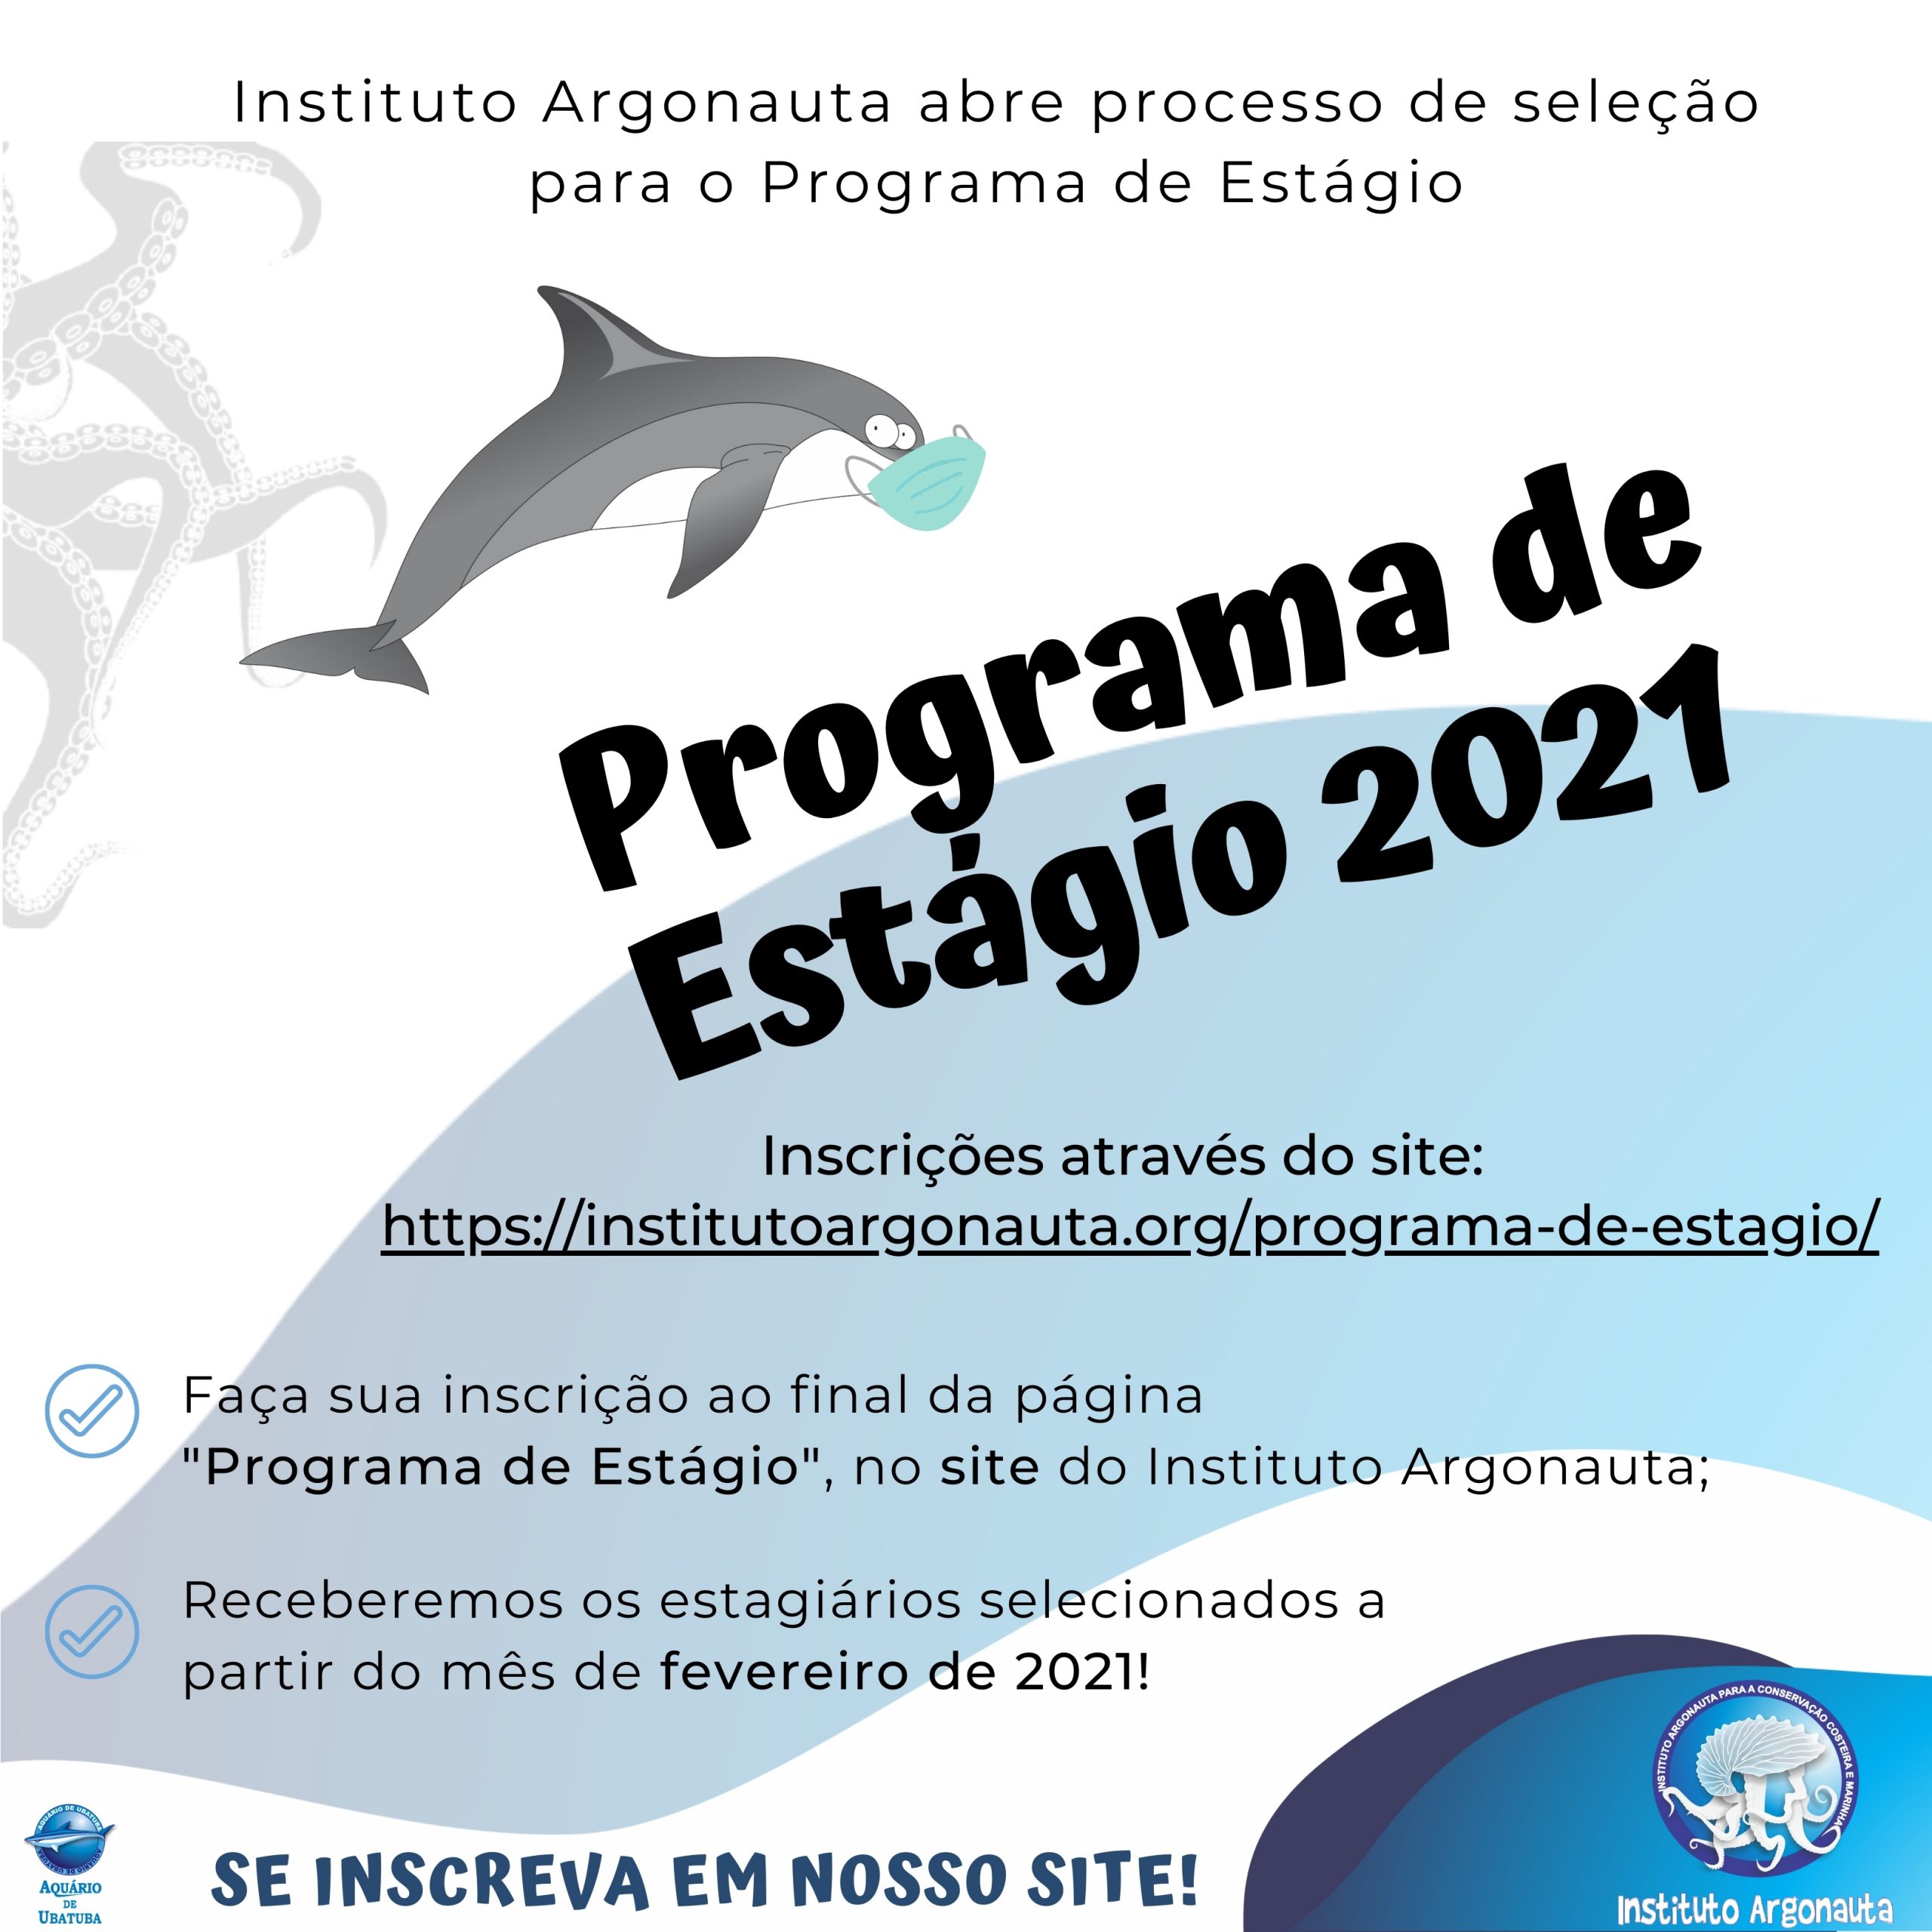 Instituto Argonauta – Ubatuba-SP